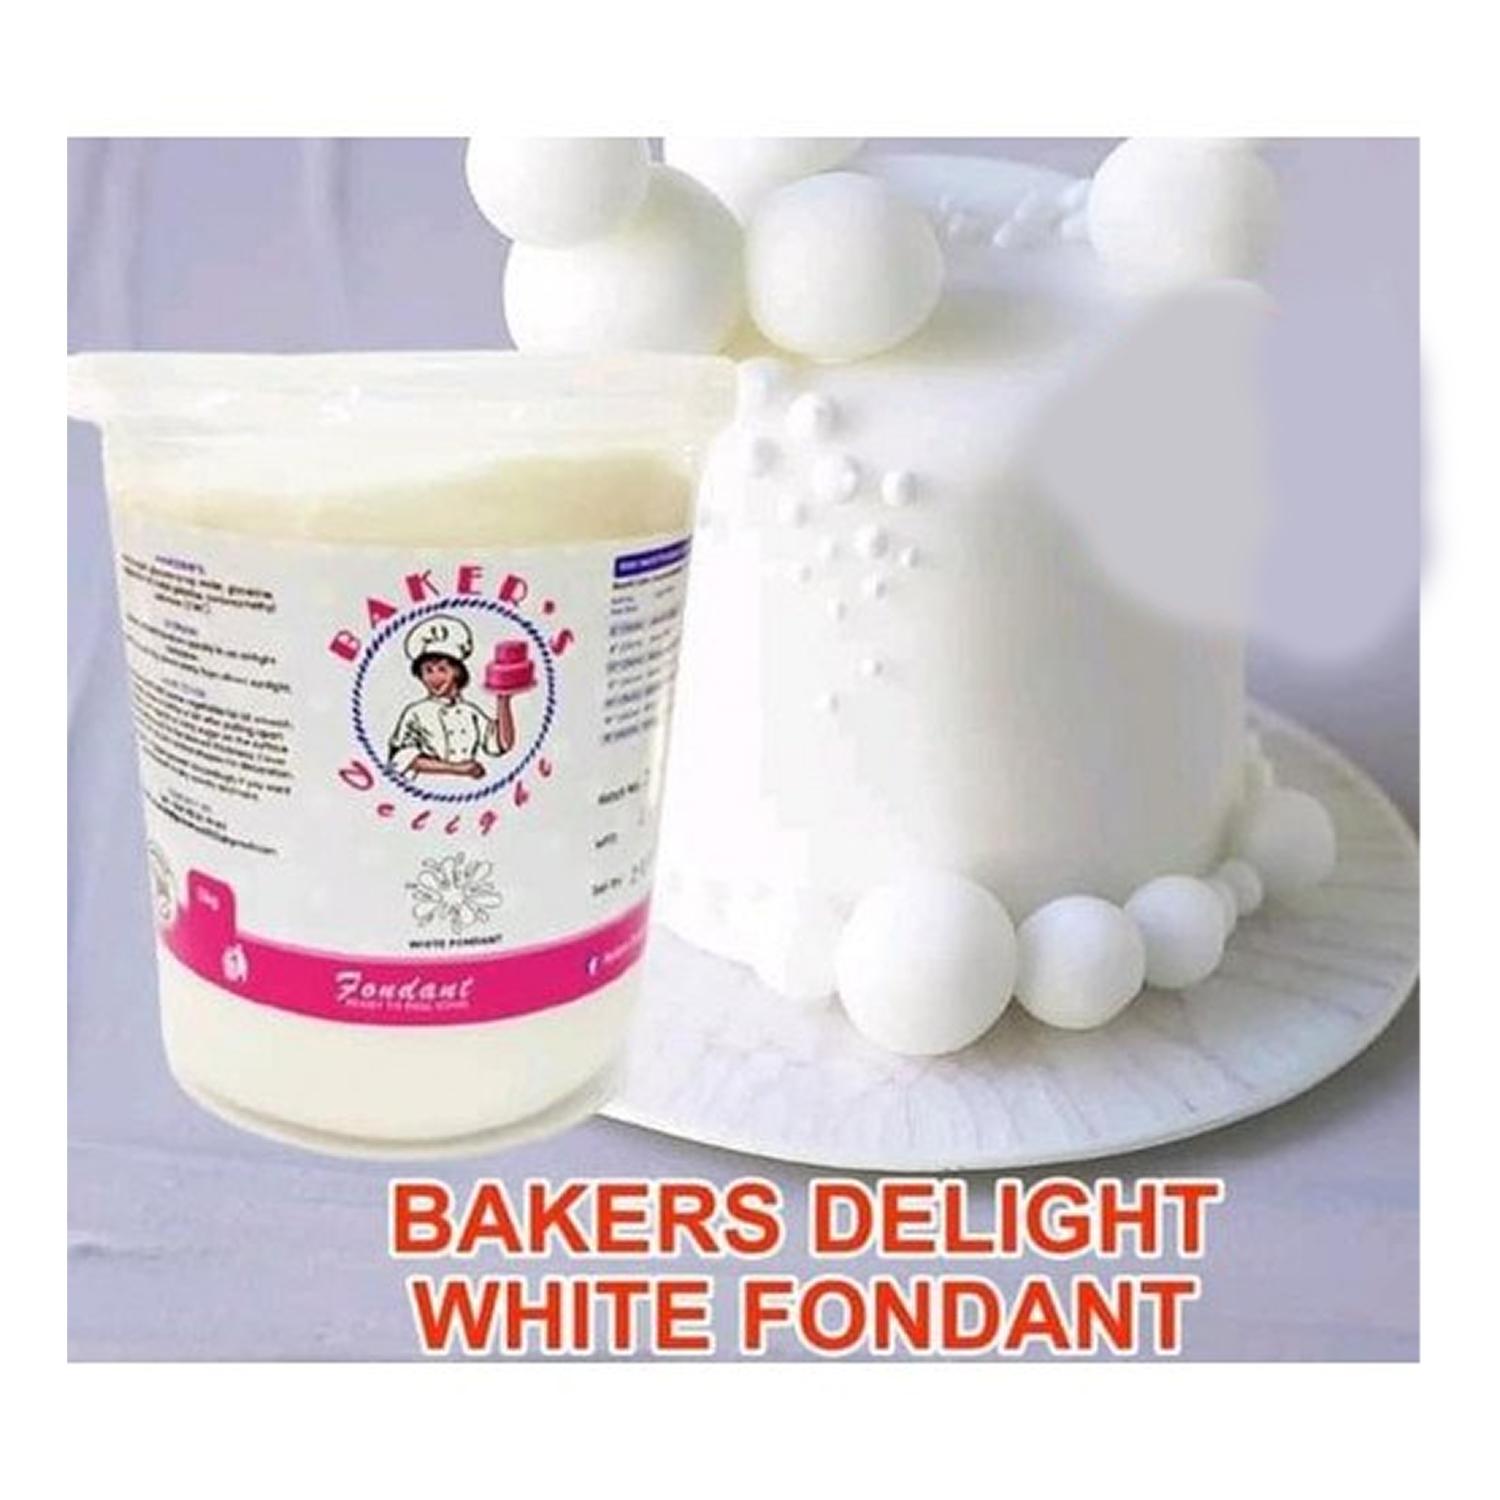 BAKER'S DELIGHT WHITE FONDANT 1KG